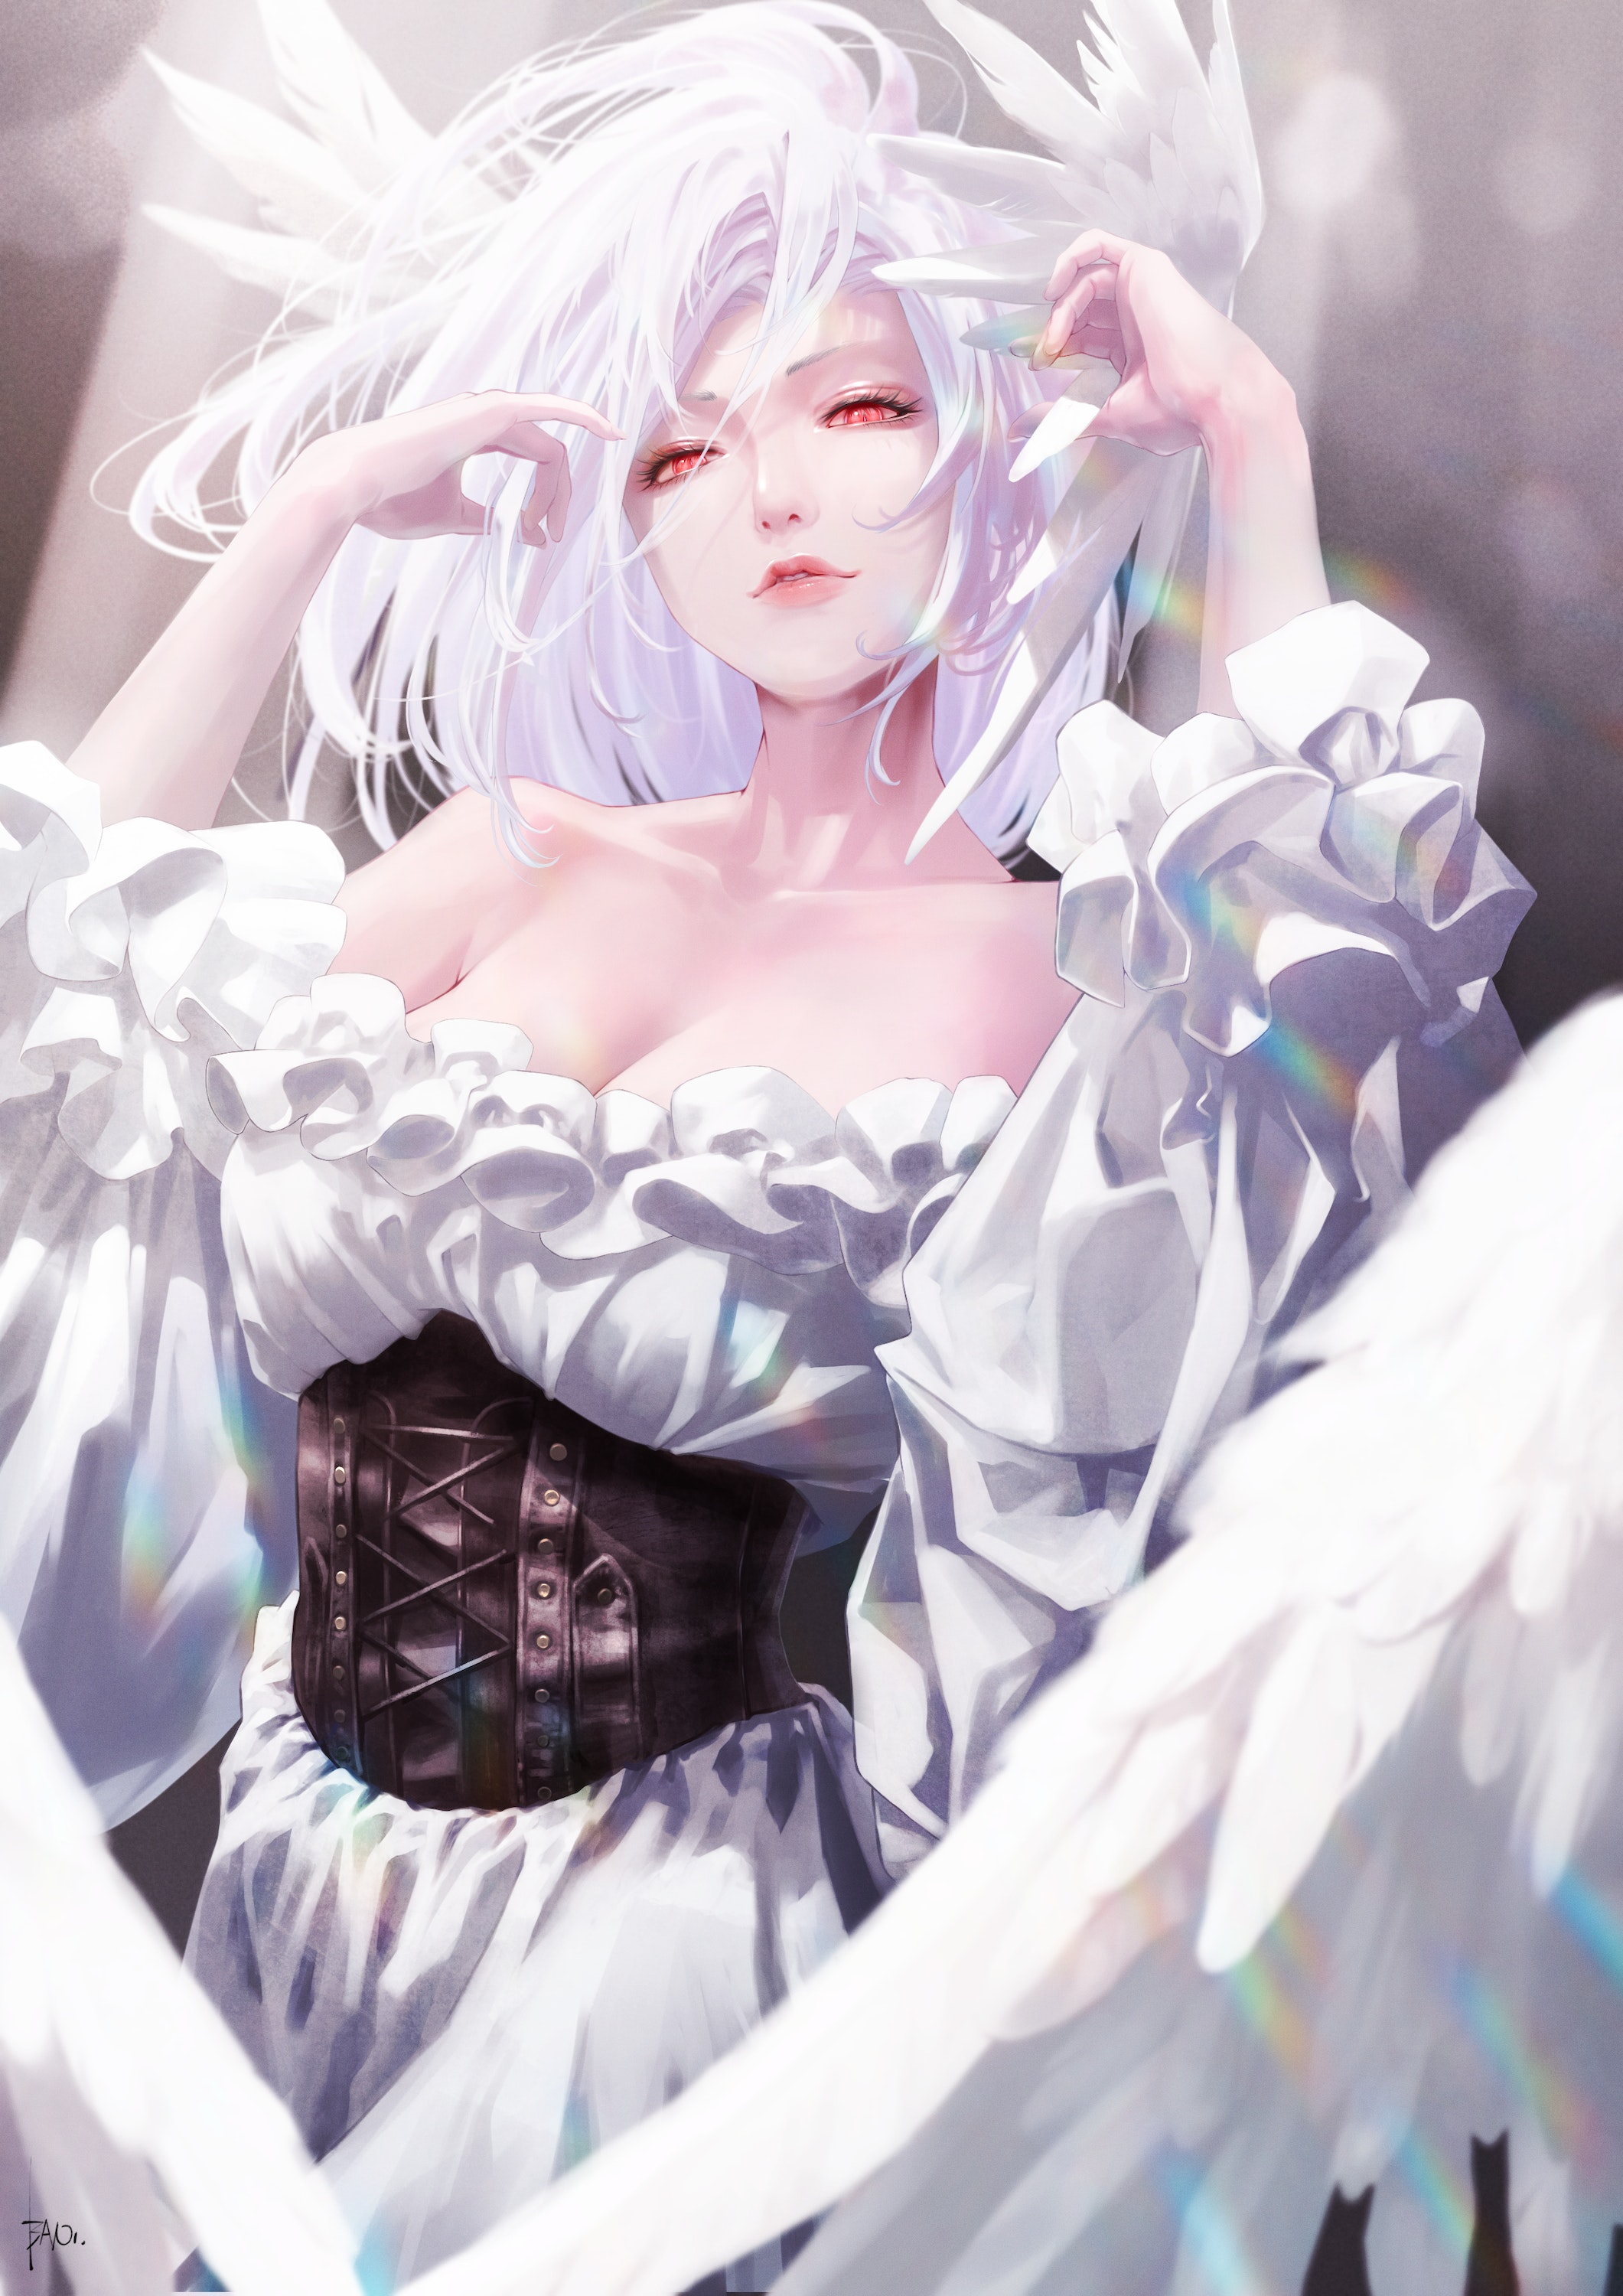 Digital Art Artwork Illustration Women Anime Anime Girls Long Hair White Hair Dress White Dress Wing 2121x3000